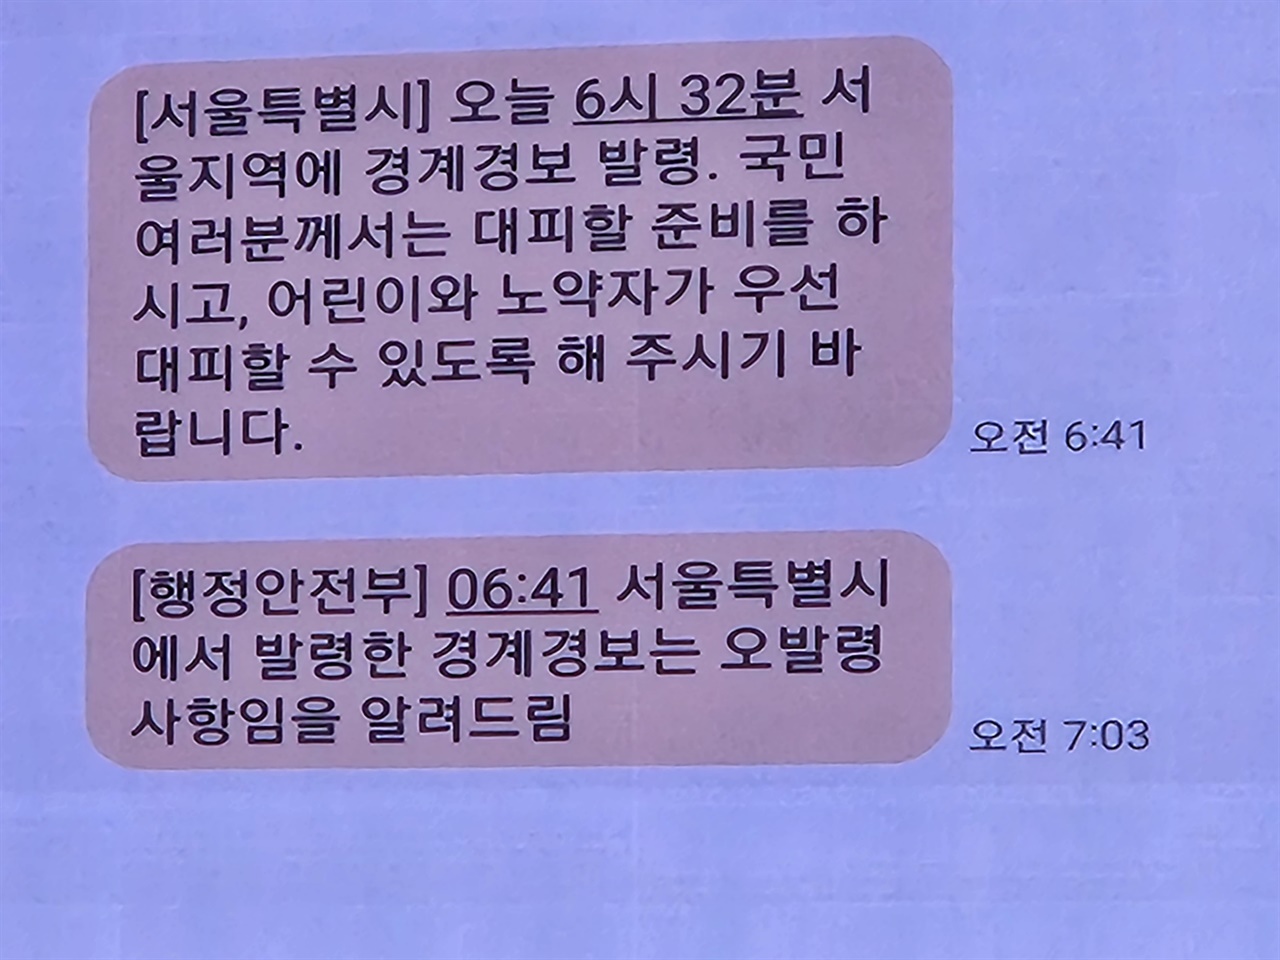 지난 5월 31일 서울지역에 발령된 경계 경보 문자. 